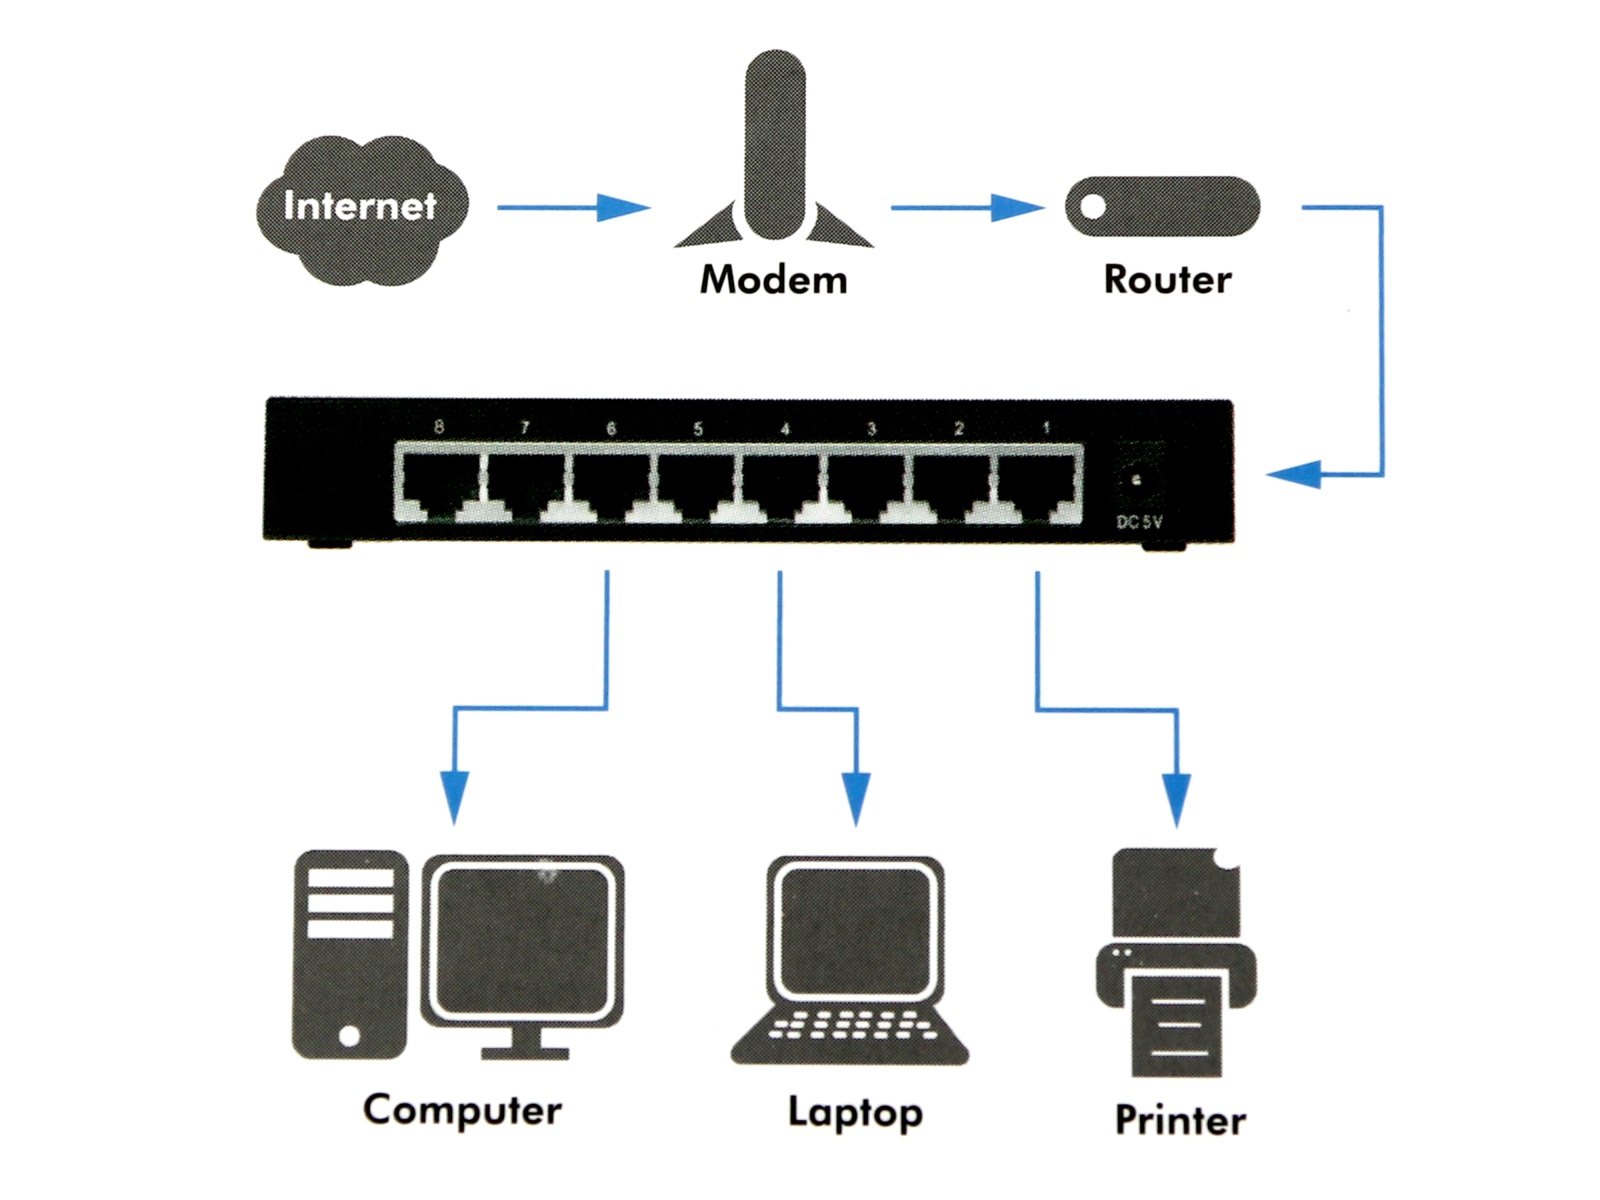 LOGILINK Gigabit Netzwerk-Switch NS0106, 8-port